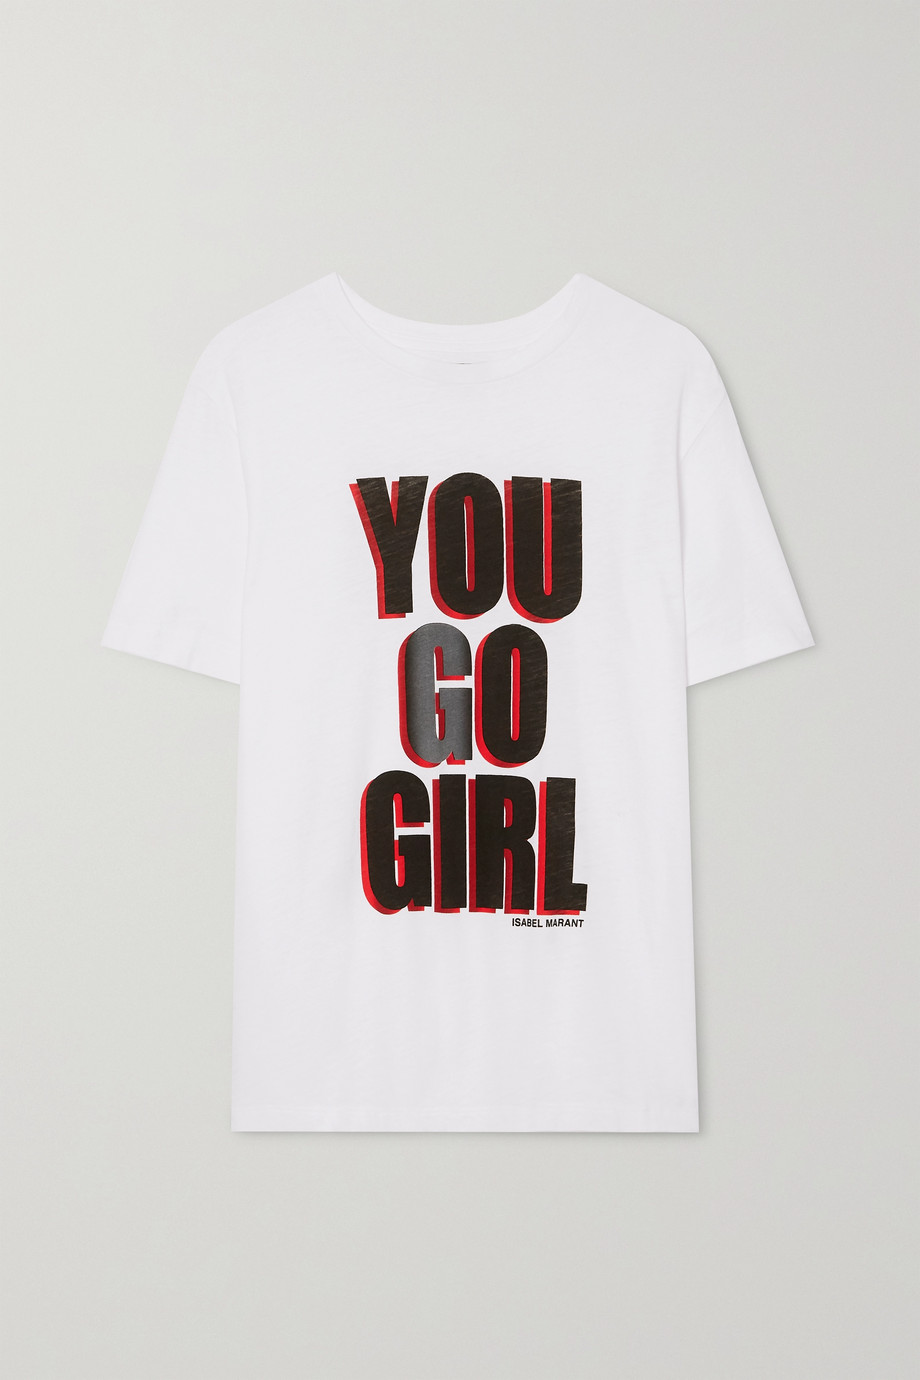 Net-a-Porter x Isabel Marant International Women's Day T-shirt 2020.